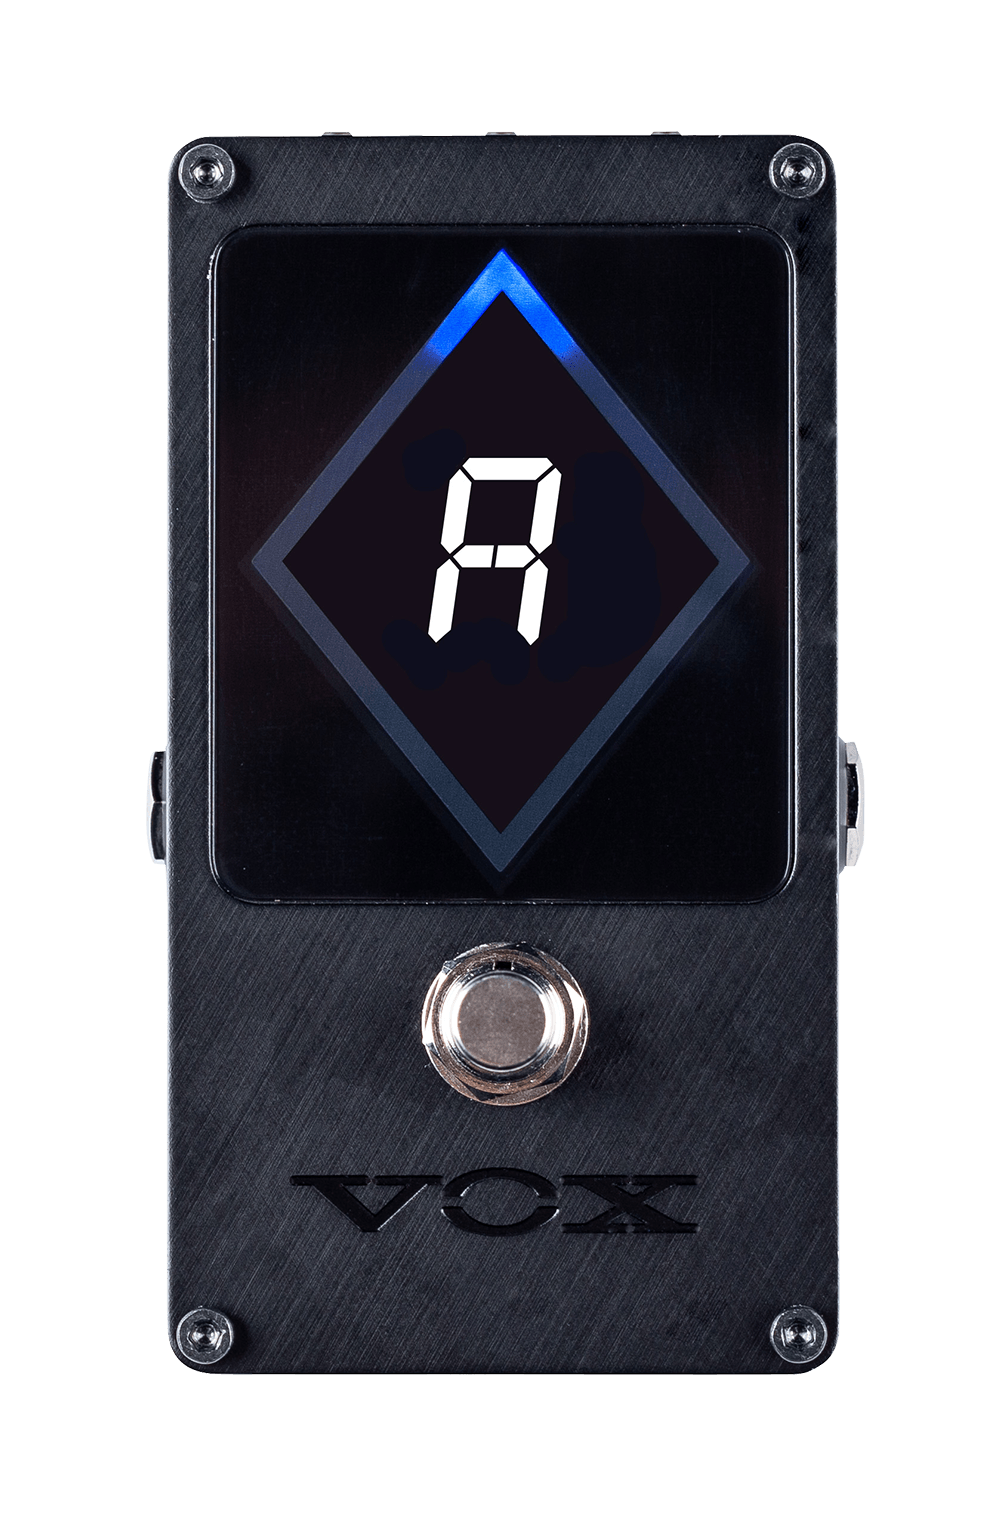 Vox VXT-1 Strobe Tuner Pedal